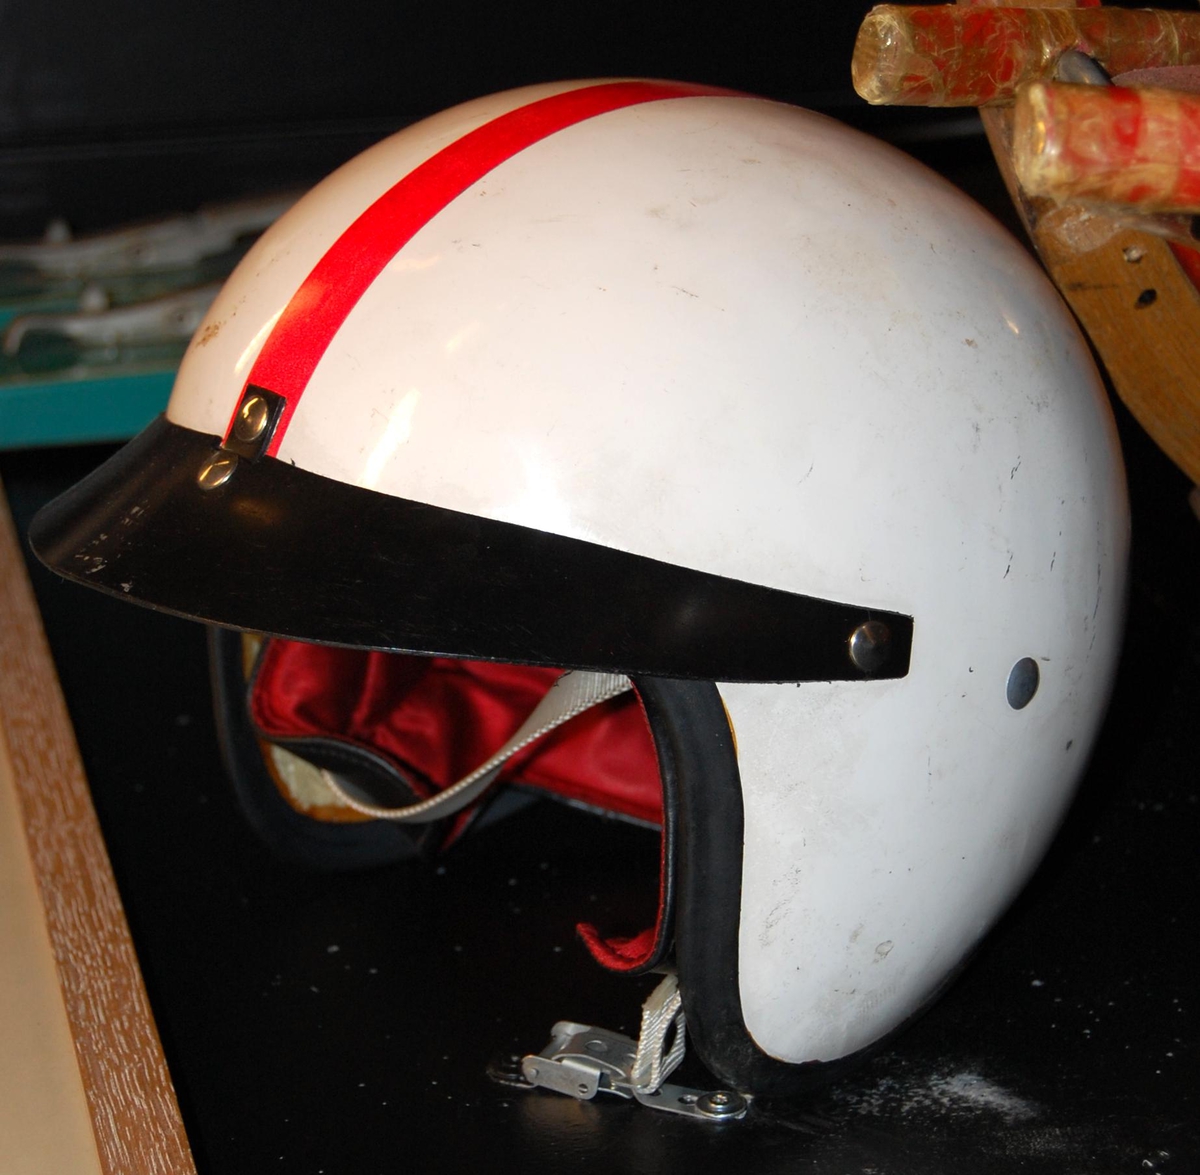 Hjelm av typen halvhjelm med kort skygge/skjerm. Hjelmen er hvit med en rød stripe. Skjermen/skyggen og kanten er sort